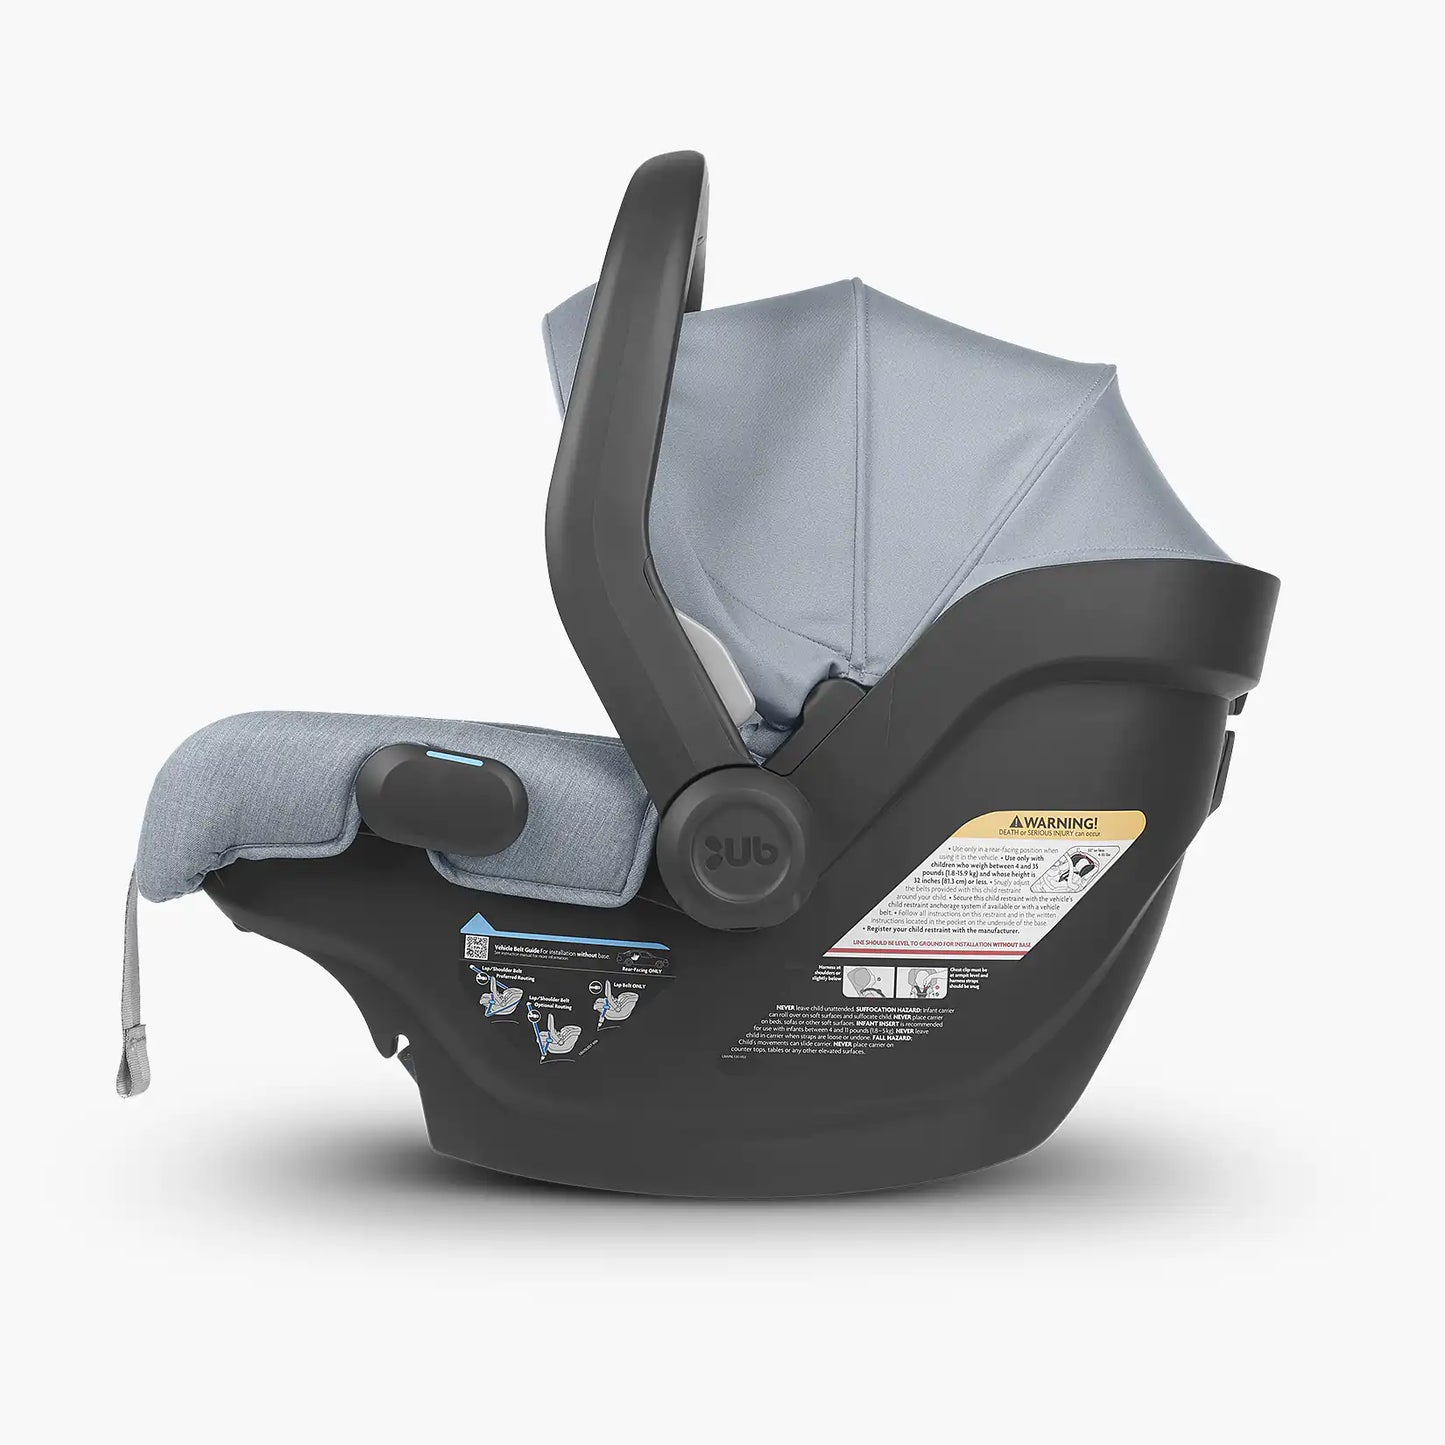 MESA V2 - Infant Car Seat - GREGORY